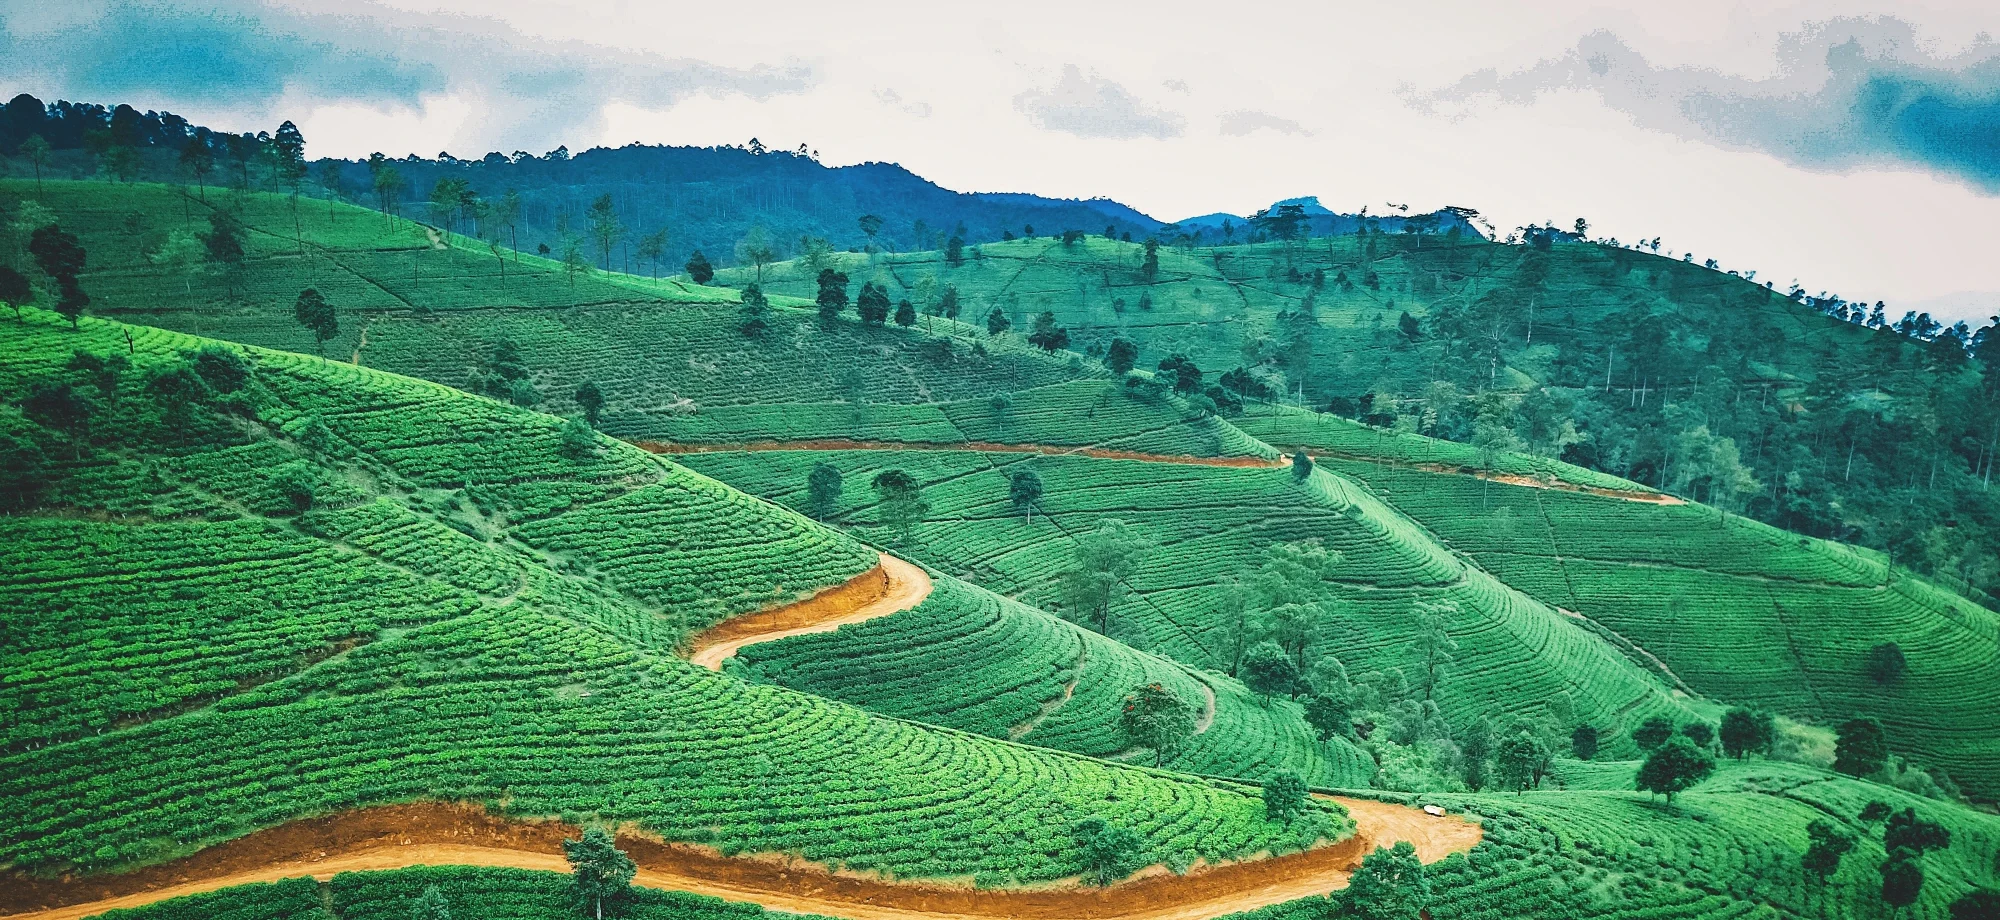 Tea country fields in Sri Lanka. 